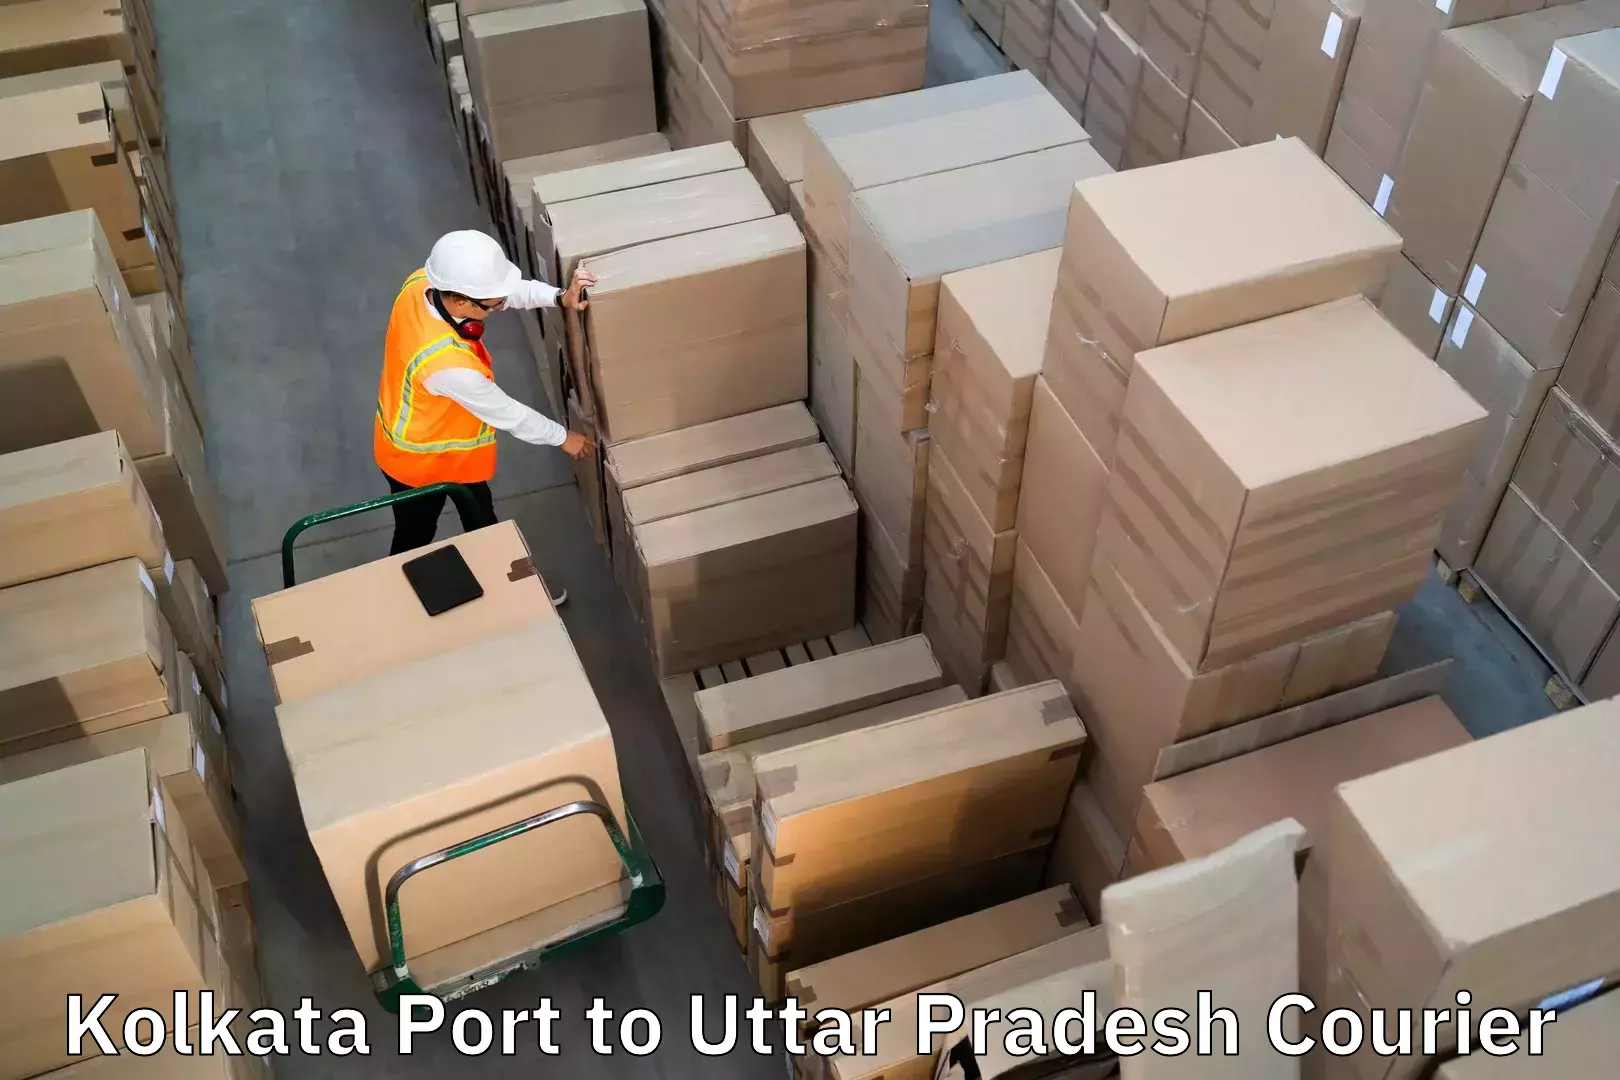 Professional baggage transport Kolkata Port to Baberu